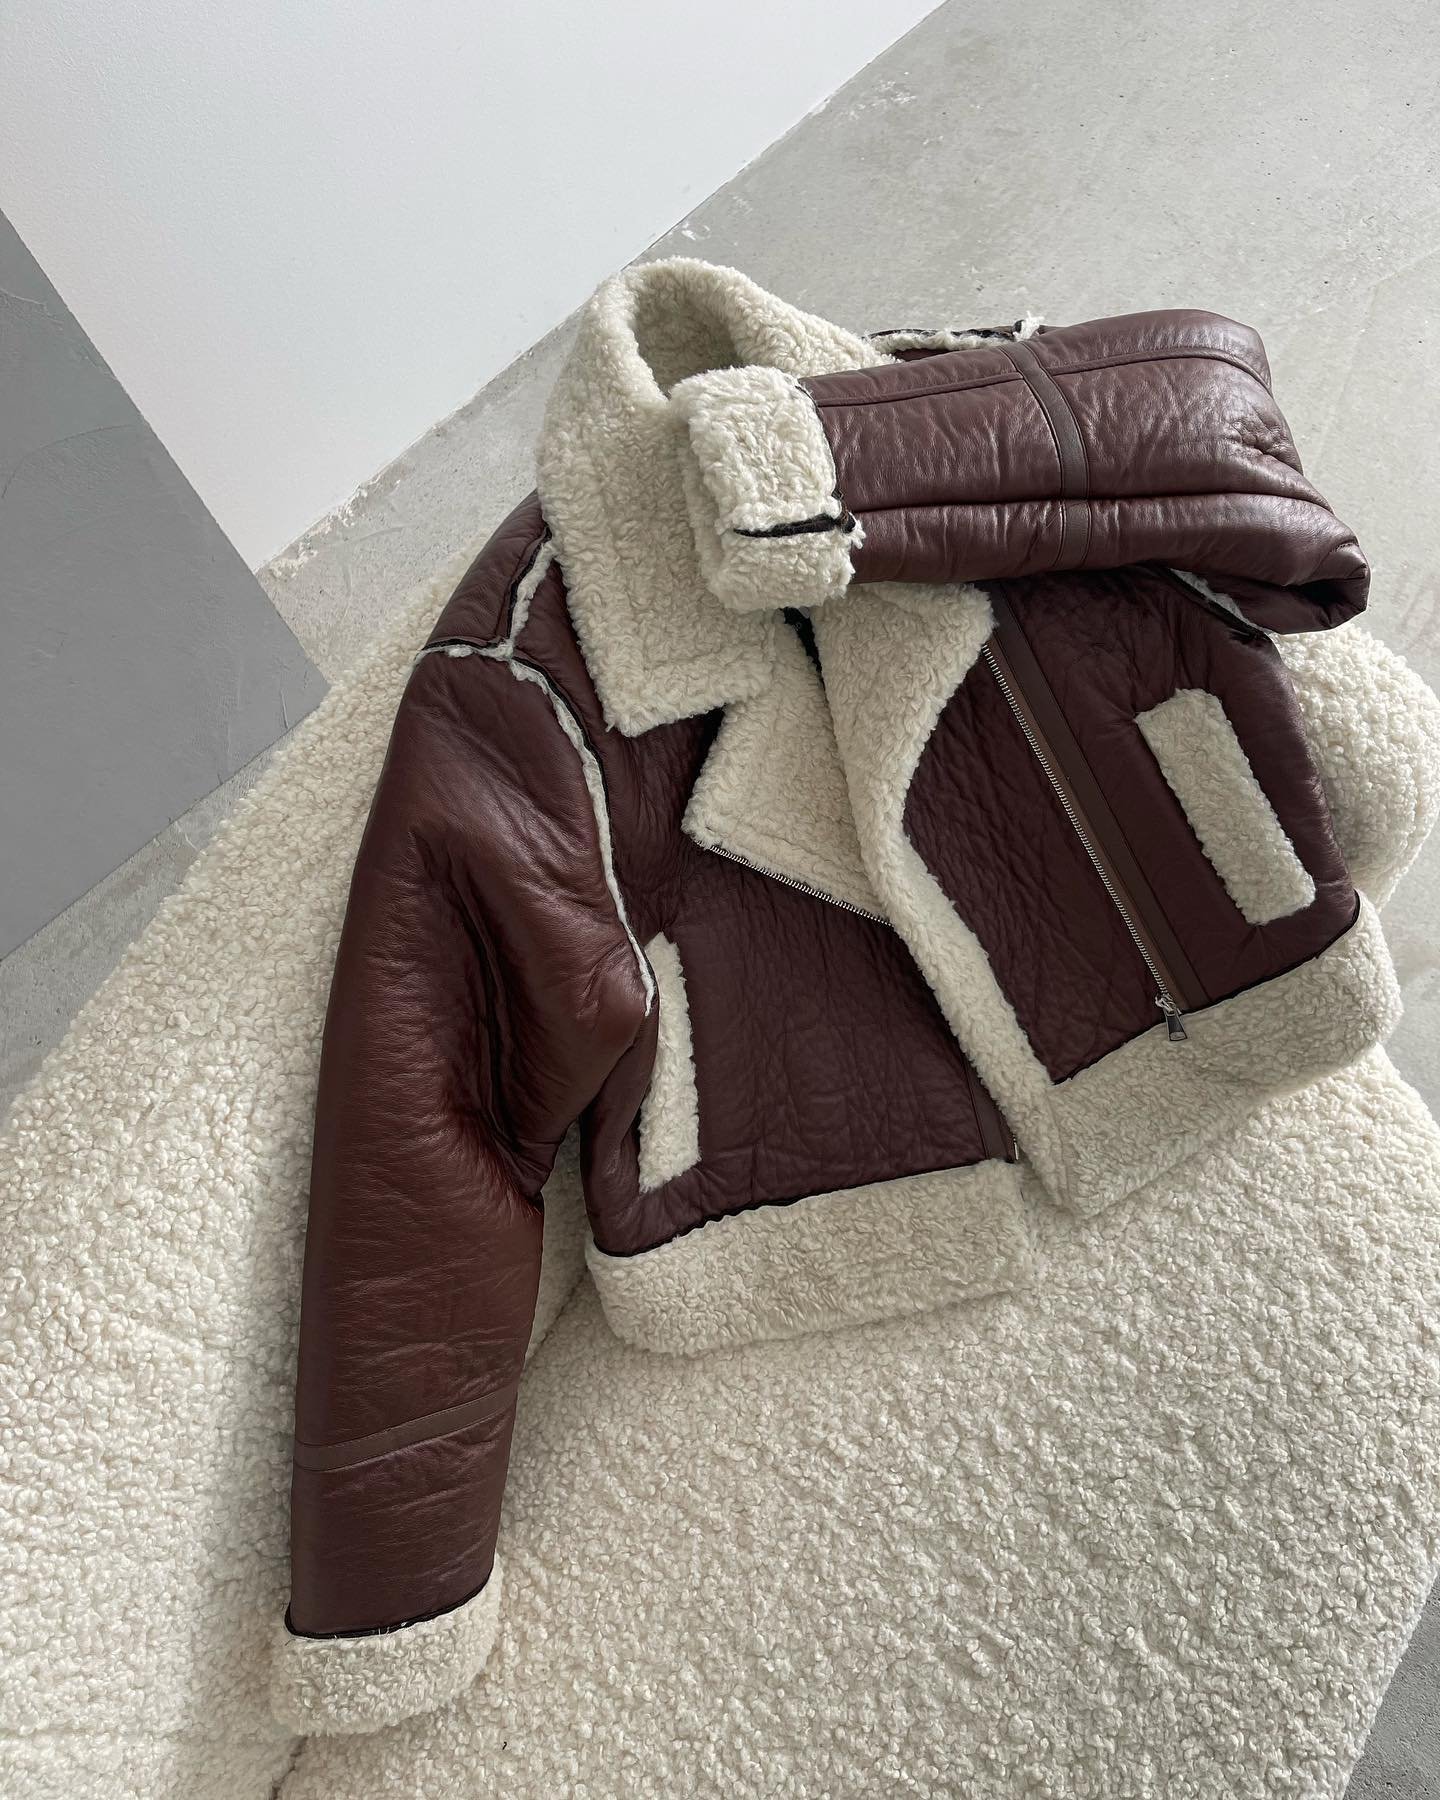 #novinka 🔥
Štýlová bunda s kožušinkou👌🏻 dokonalý nadčasový kúsok do tvojho šatníka.